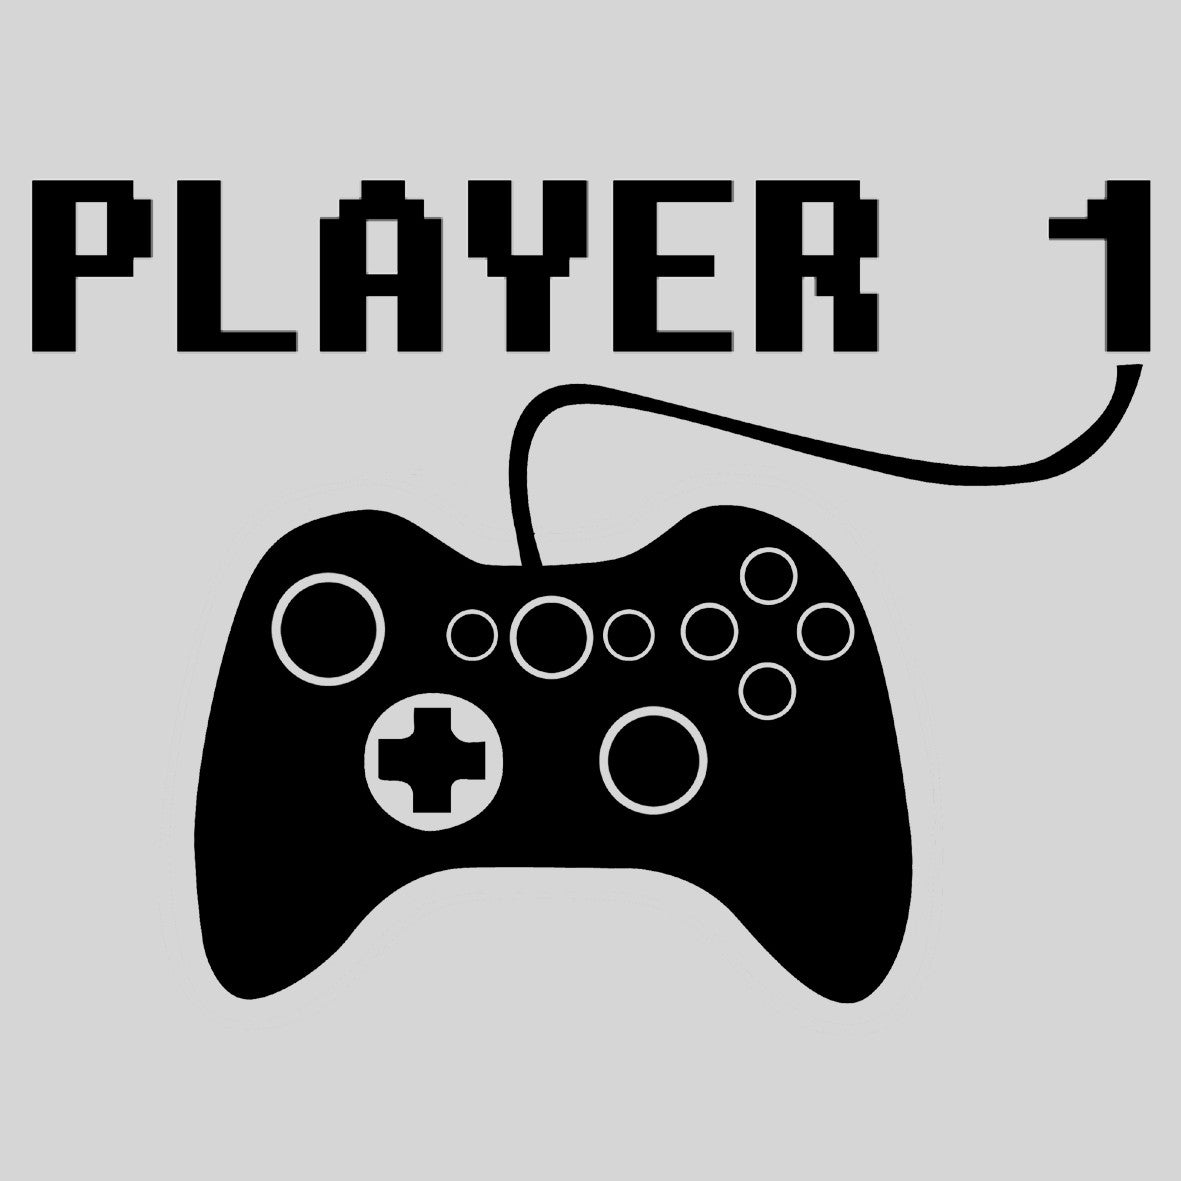 Игры player 2 player 1. Player 1. Player 2. Player 1 Player 2. Player надпись.